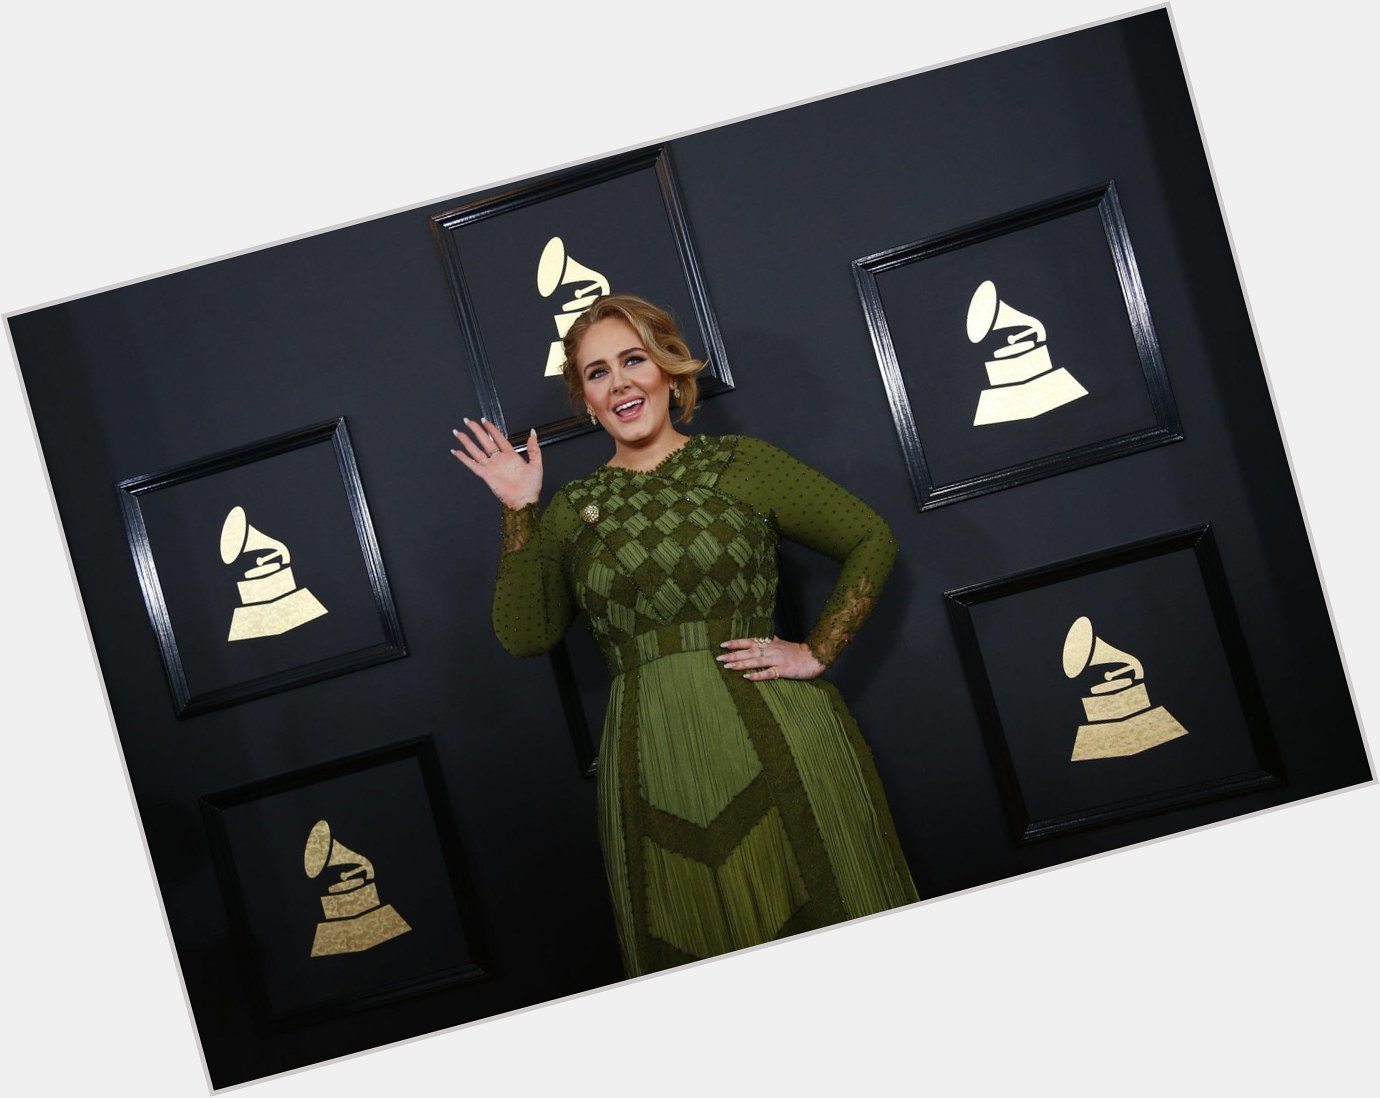 Happy 29th birthday, Adele!  